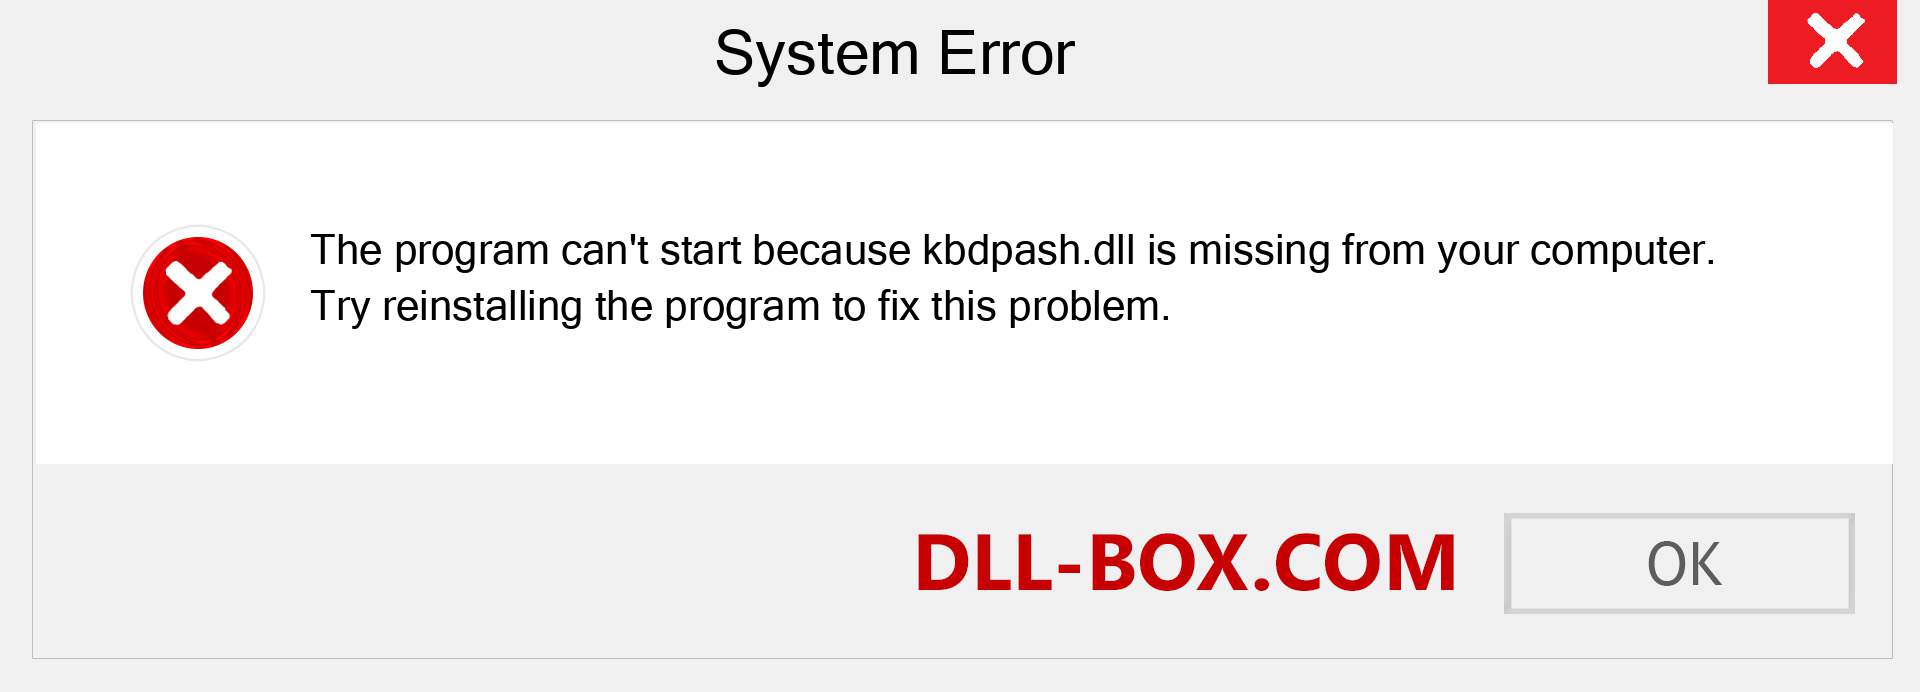  kbdpash.dll file is missing?. Download for Windows 7, 8, 10 - Fix  kbdpash dll Missing Error on Windows, photos, images